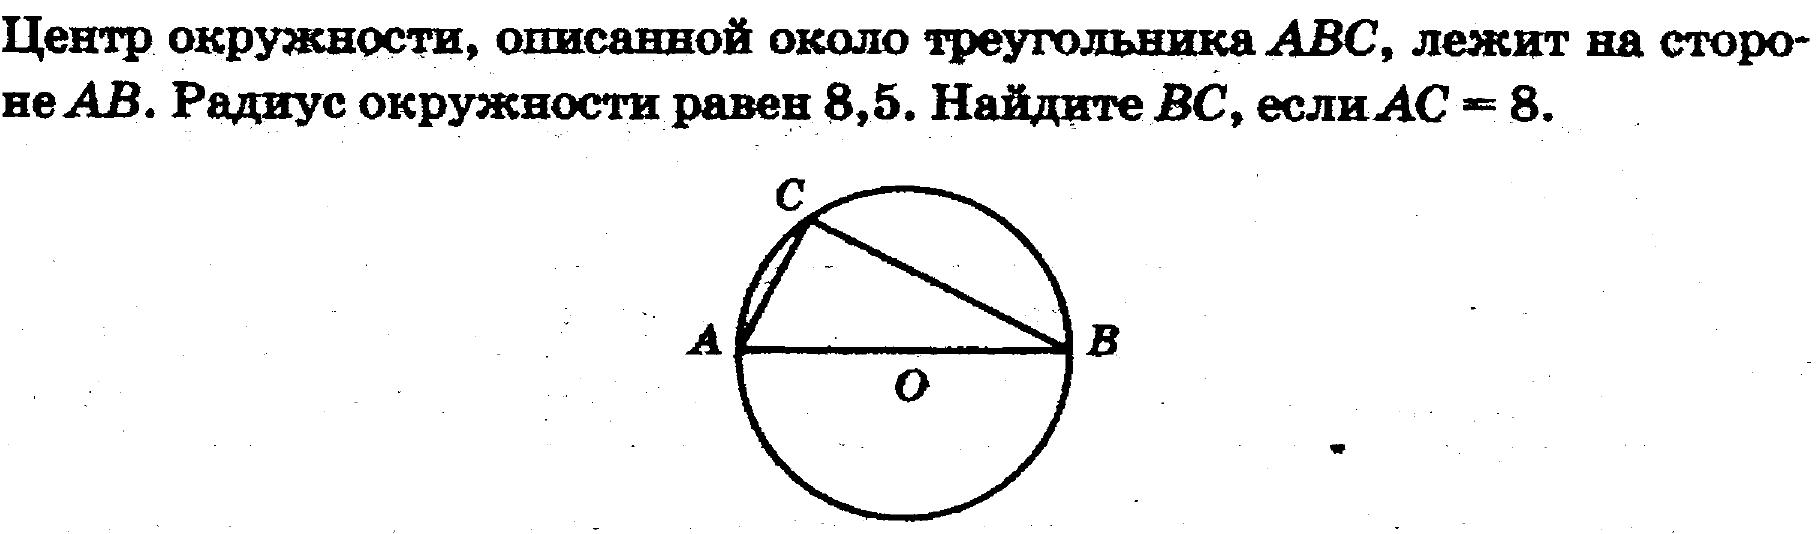 Центр окружности около треугольника